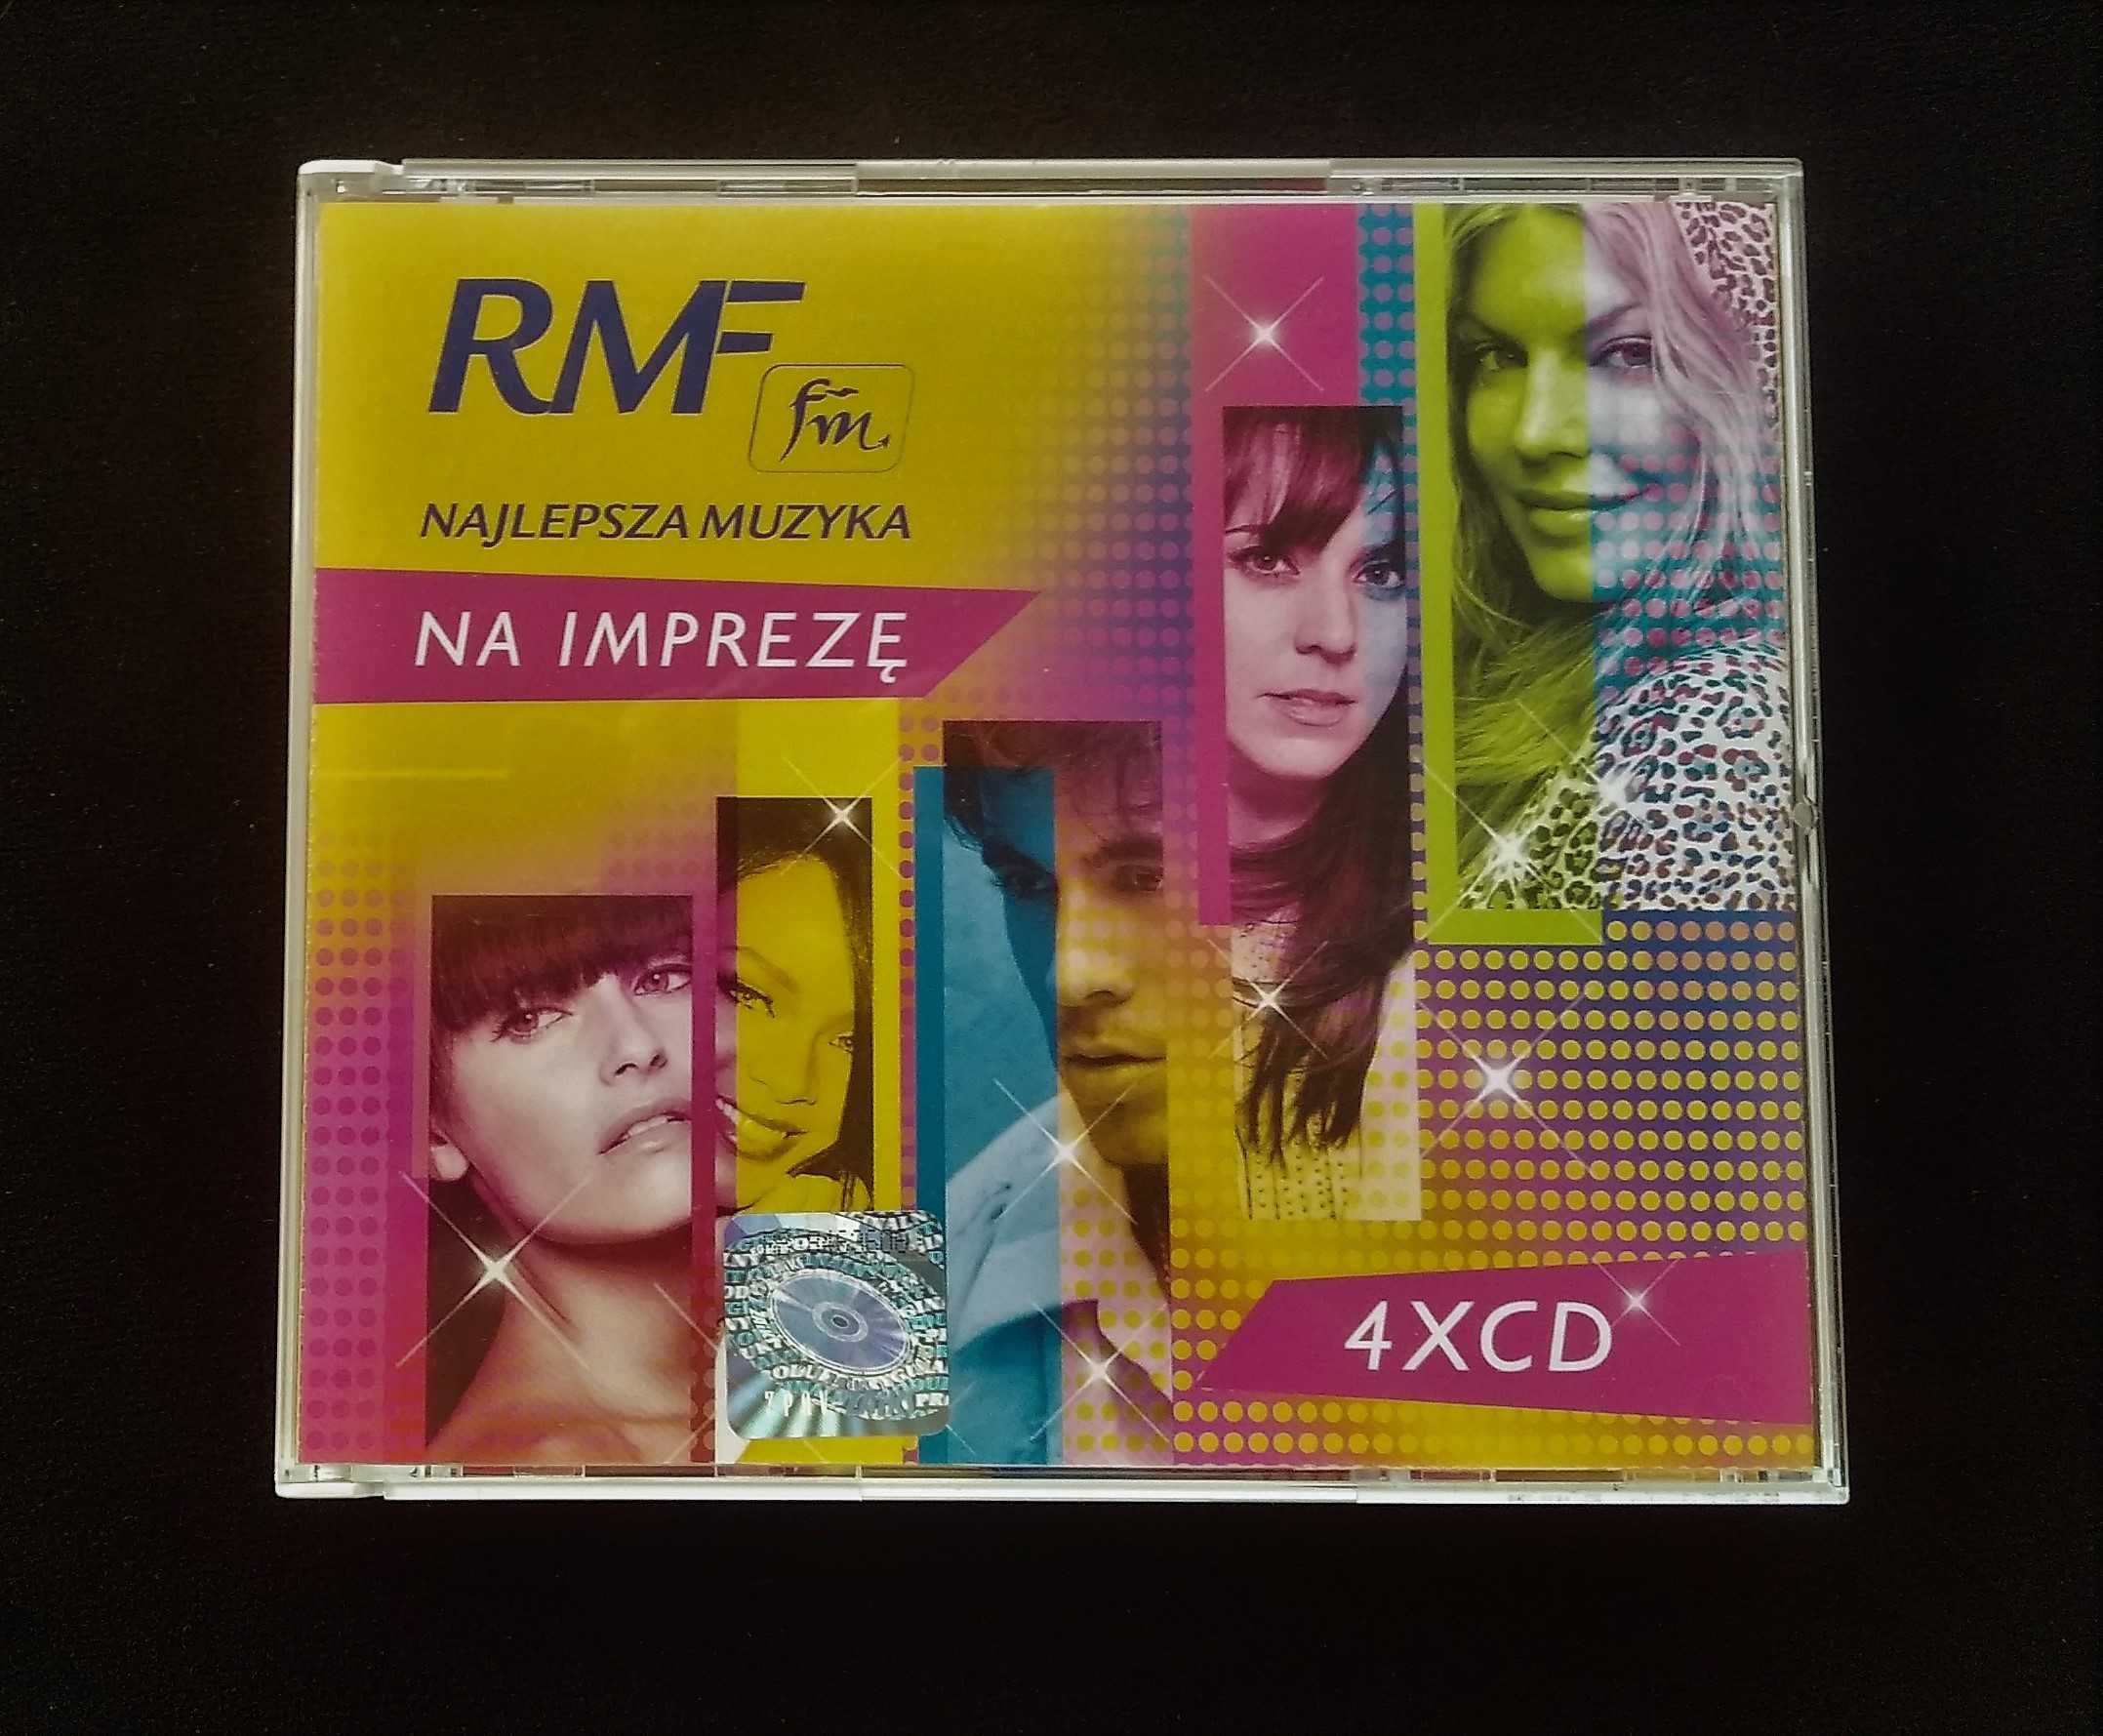 RMF Fm - najlepsza muzyka na imprezę 4CD